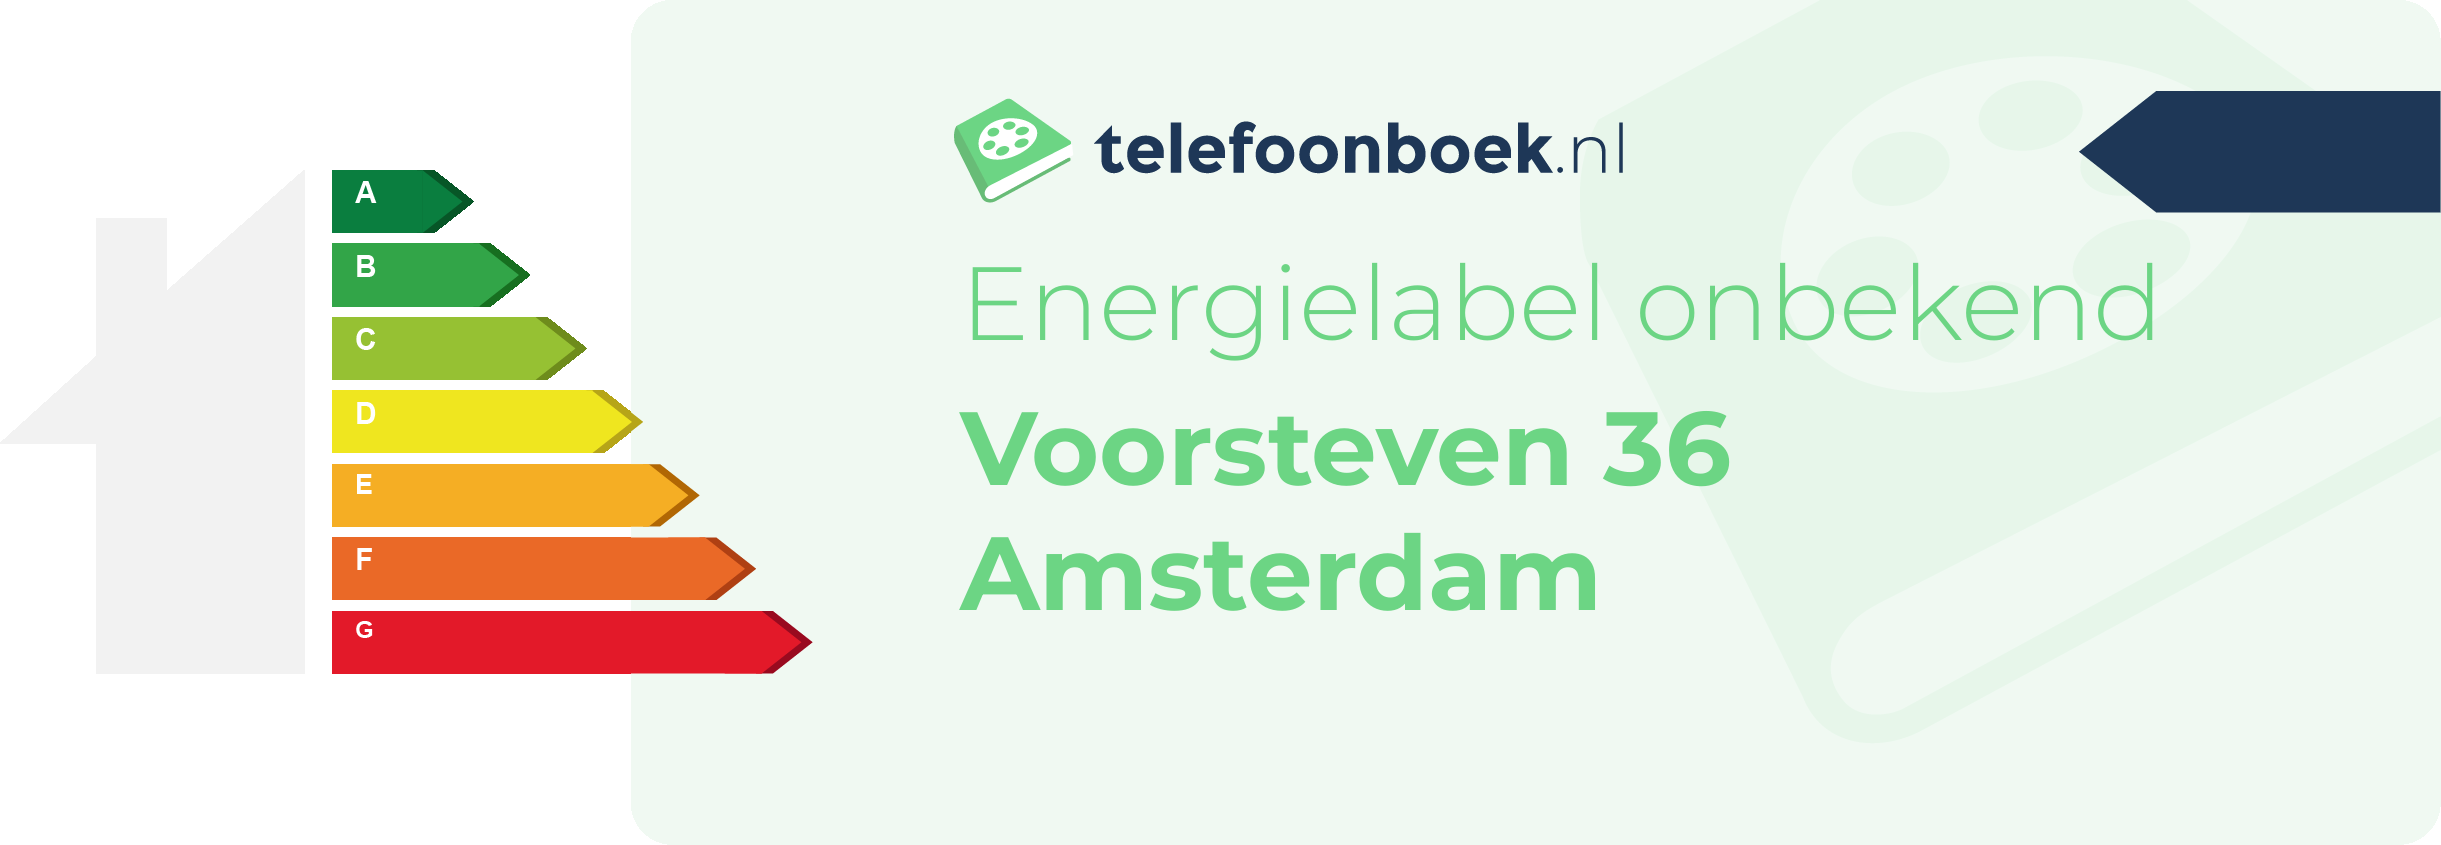 Energielabel Voorsteven 36 Amsterdam